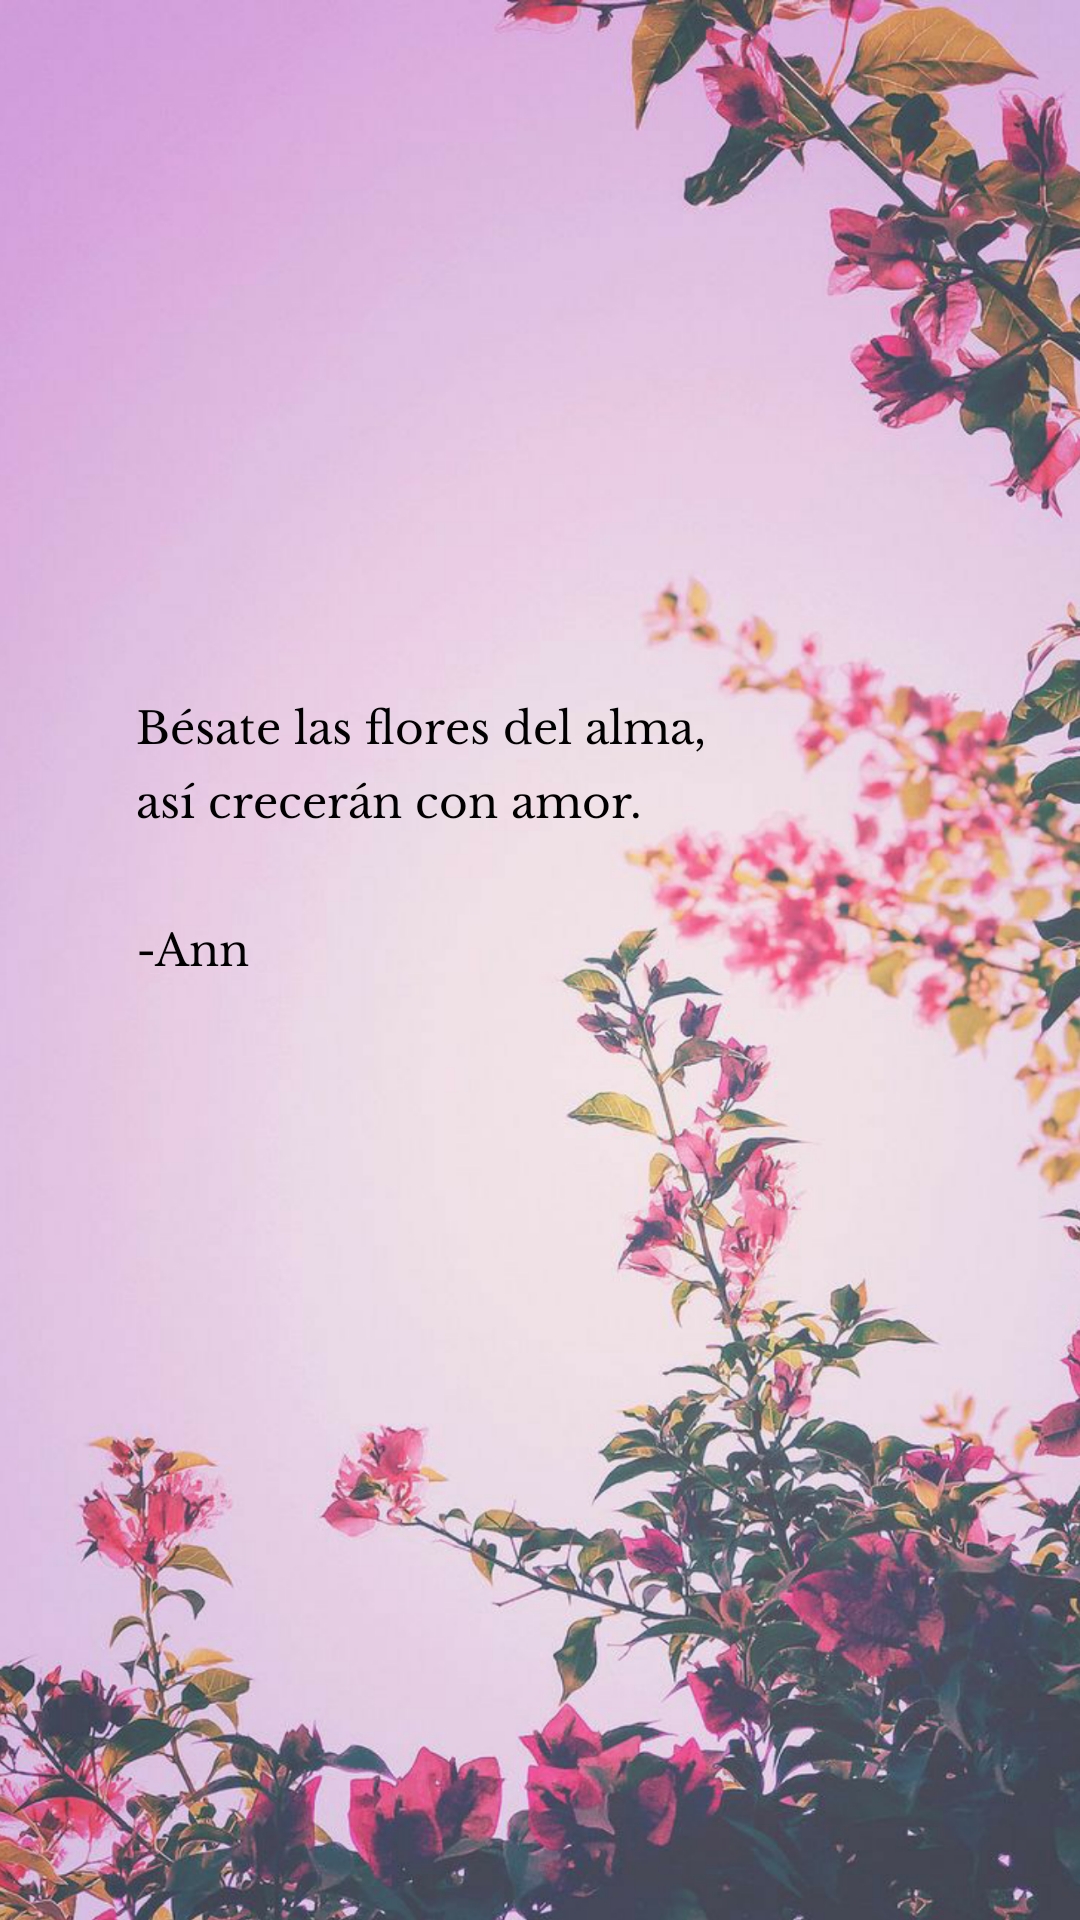 Bésate las flores del alma,
así crecerán con amor.-Ann